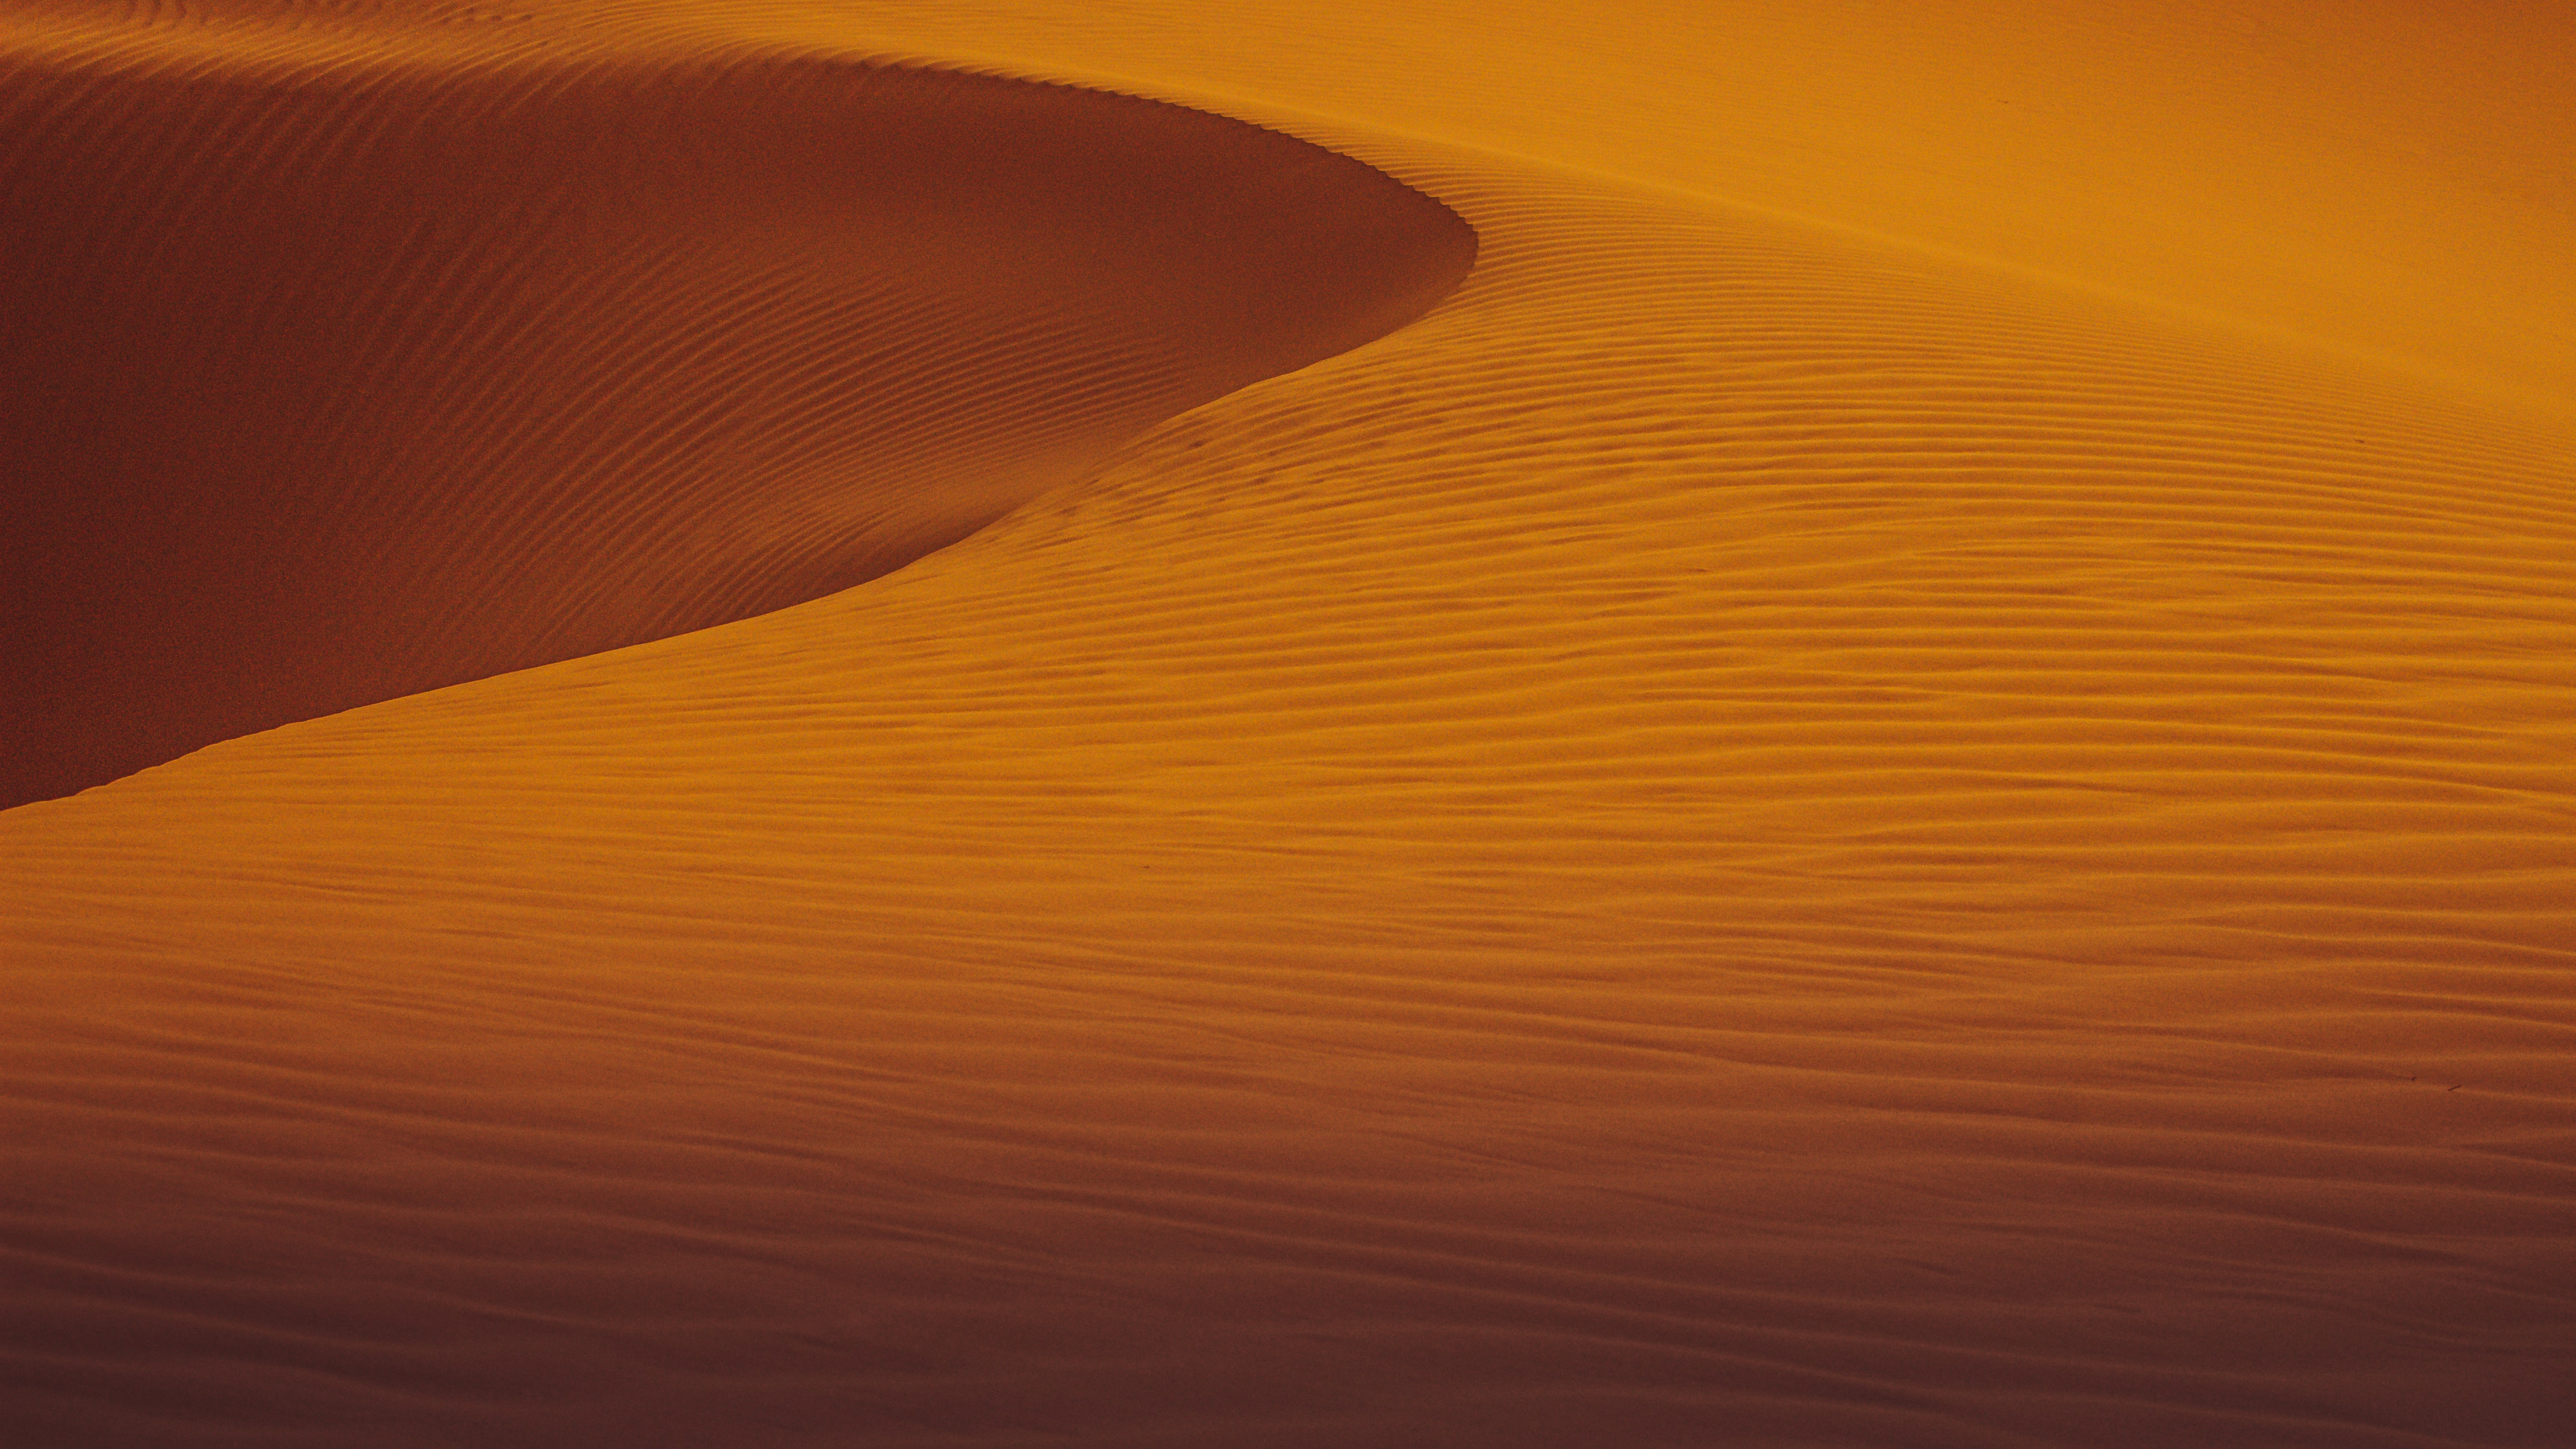 没有生机却又如此美丽，超清的沙漠桌面壁纸推荐